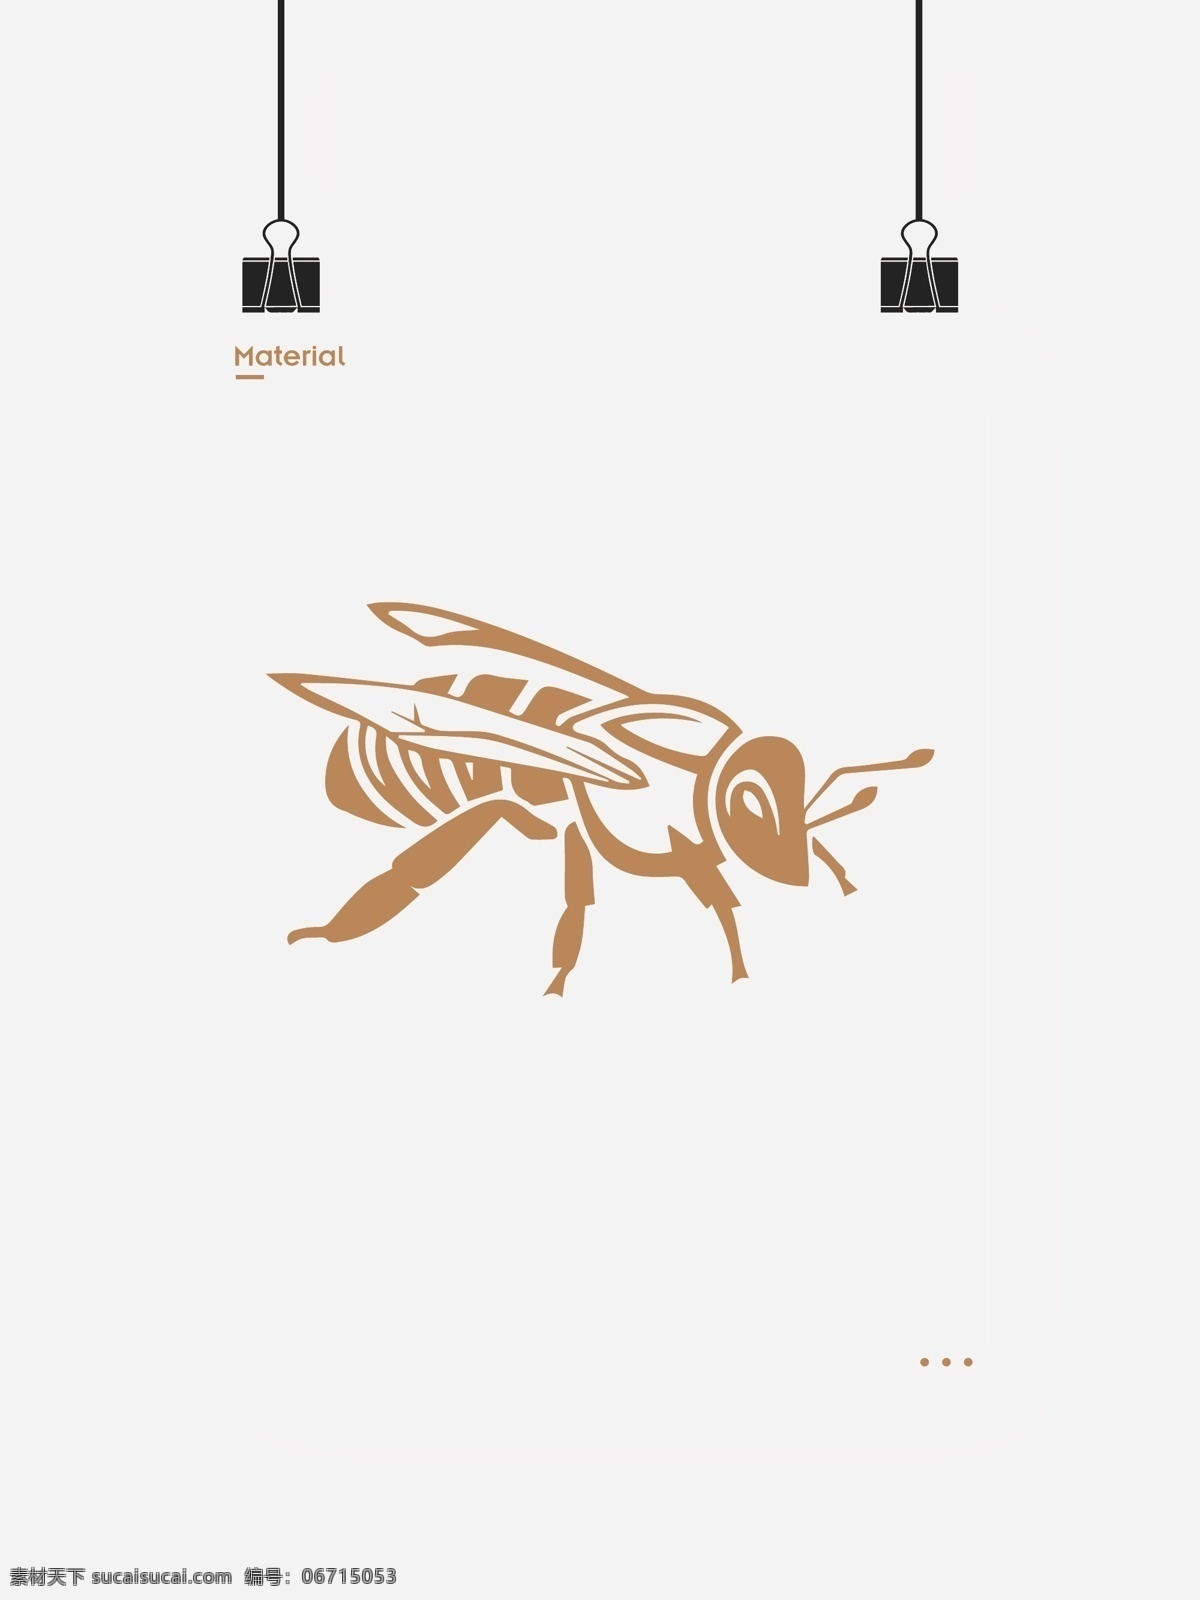 小蜜蜂 可爱蜜蜂 卡通蜜蜂 手绘蜜蜂 矢量蜜蜂 蜜蜂素材 蜜蜂元素 蜜蜂图案 蜜蜂图形 蜜蜂logo 纹身蜜蜂 矢量图标 标志图标 其他图标